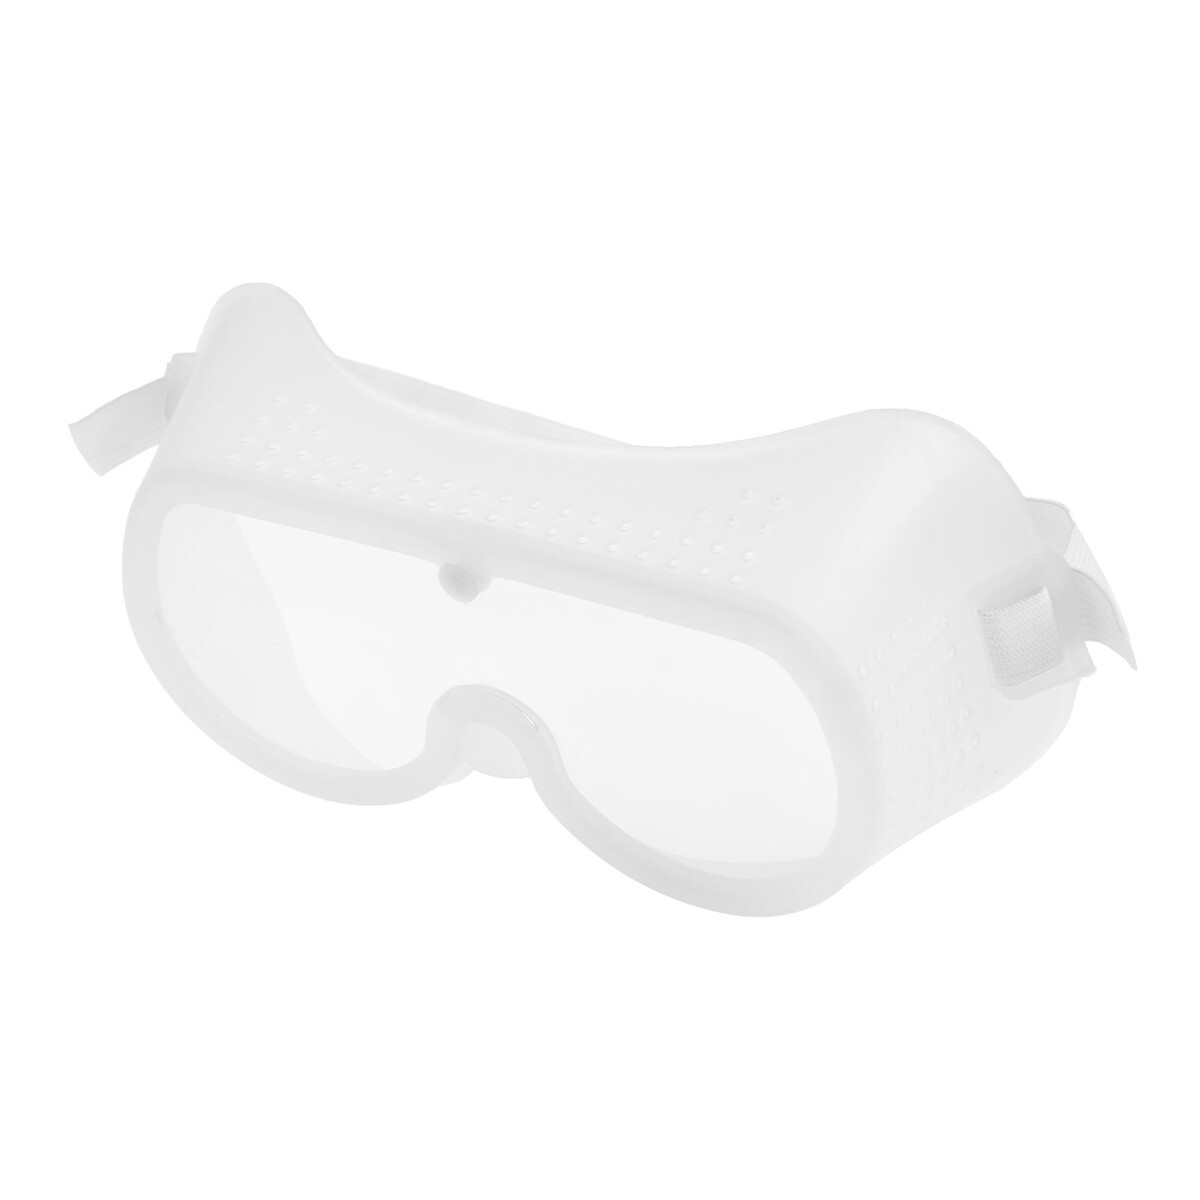 Очки защитные тундра, с поликарбонатными линзами, прозрачные, на резинке очки защитные ормис 22 3 007 поликарбонат